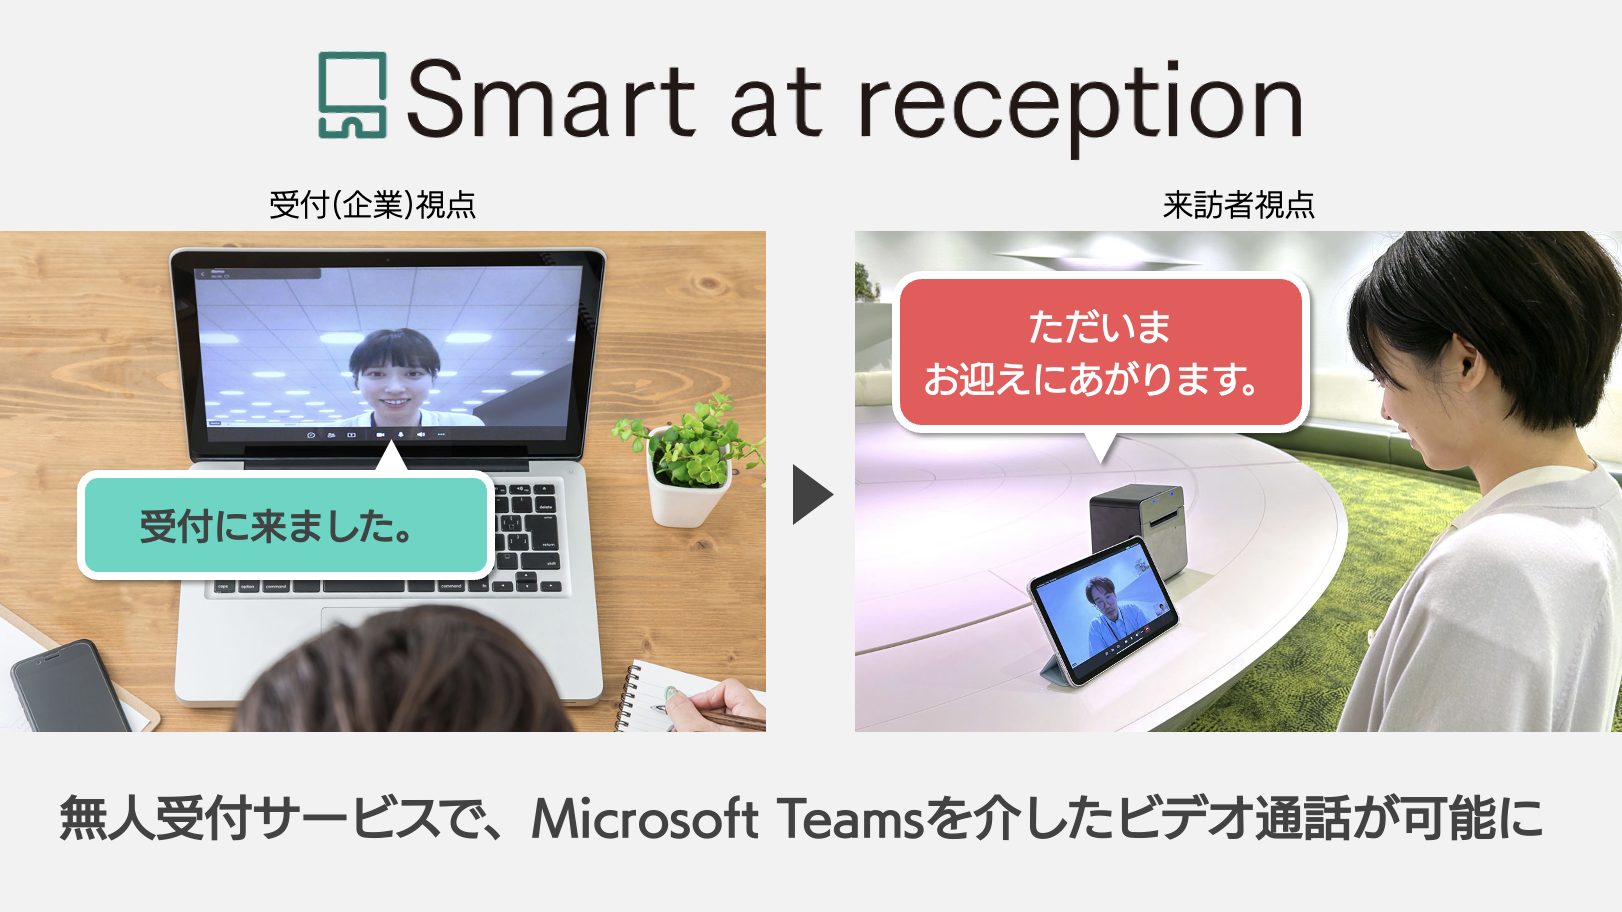 iPadによる無人受付サービスにMicrosoft Teamsビデオ通話が連携 ～M-SOLUTIONS株式会社の「Smart at reception」が無人受付のセキュリティ対策を強化～